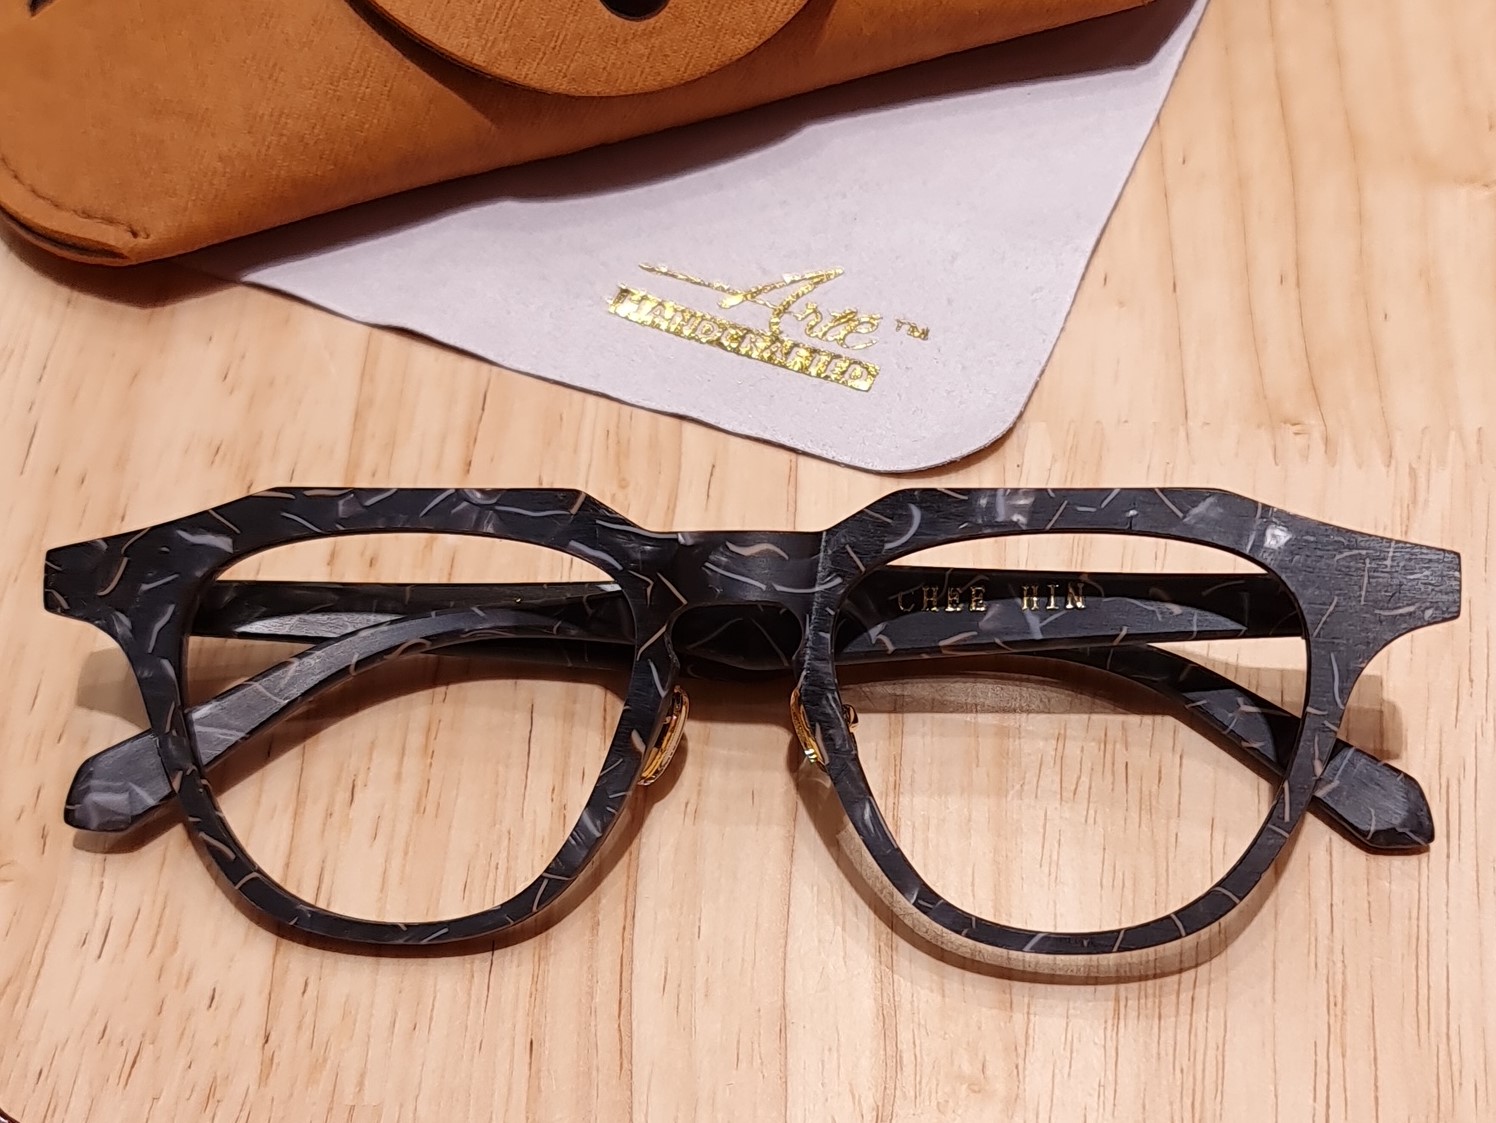 吉隆坡Arte Handcrafted眼鏡DIY工作坊